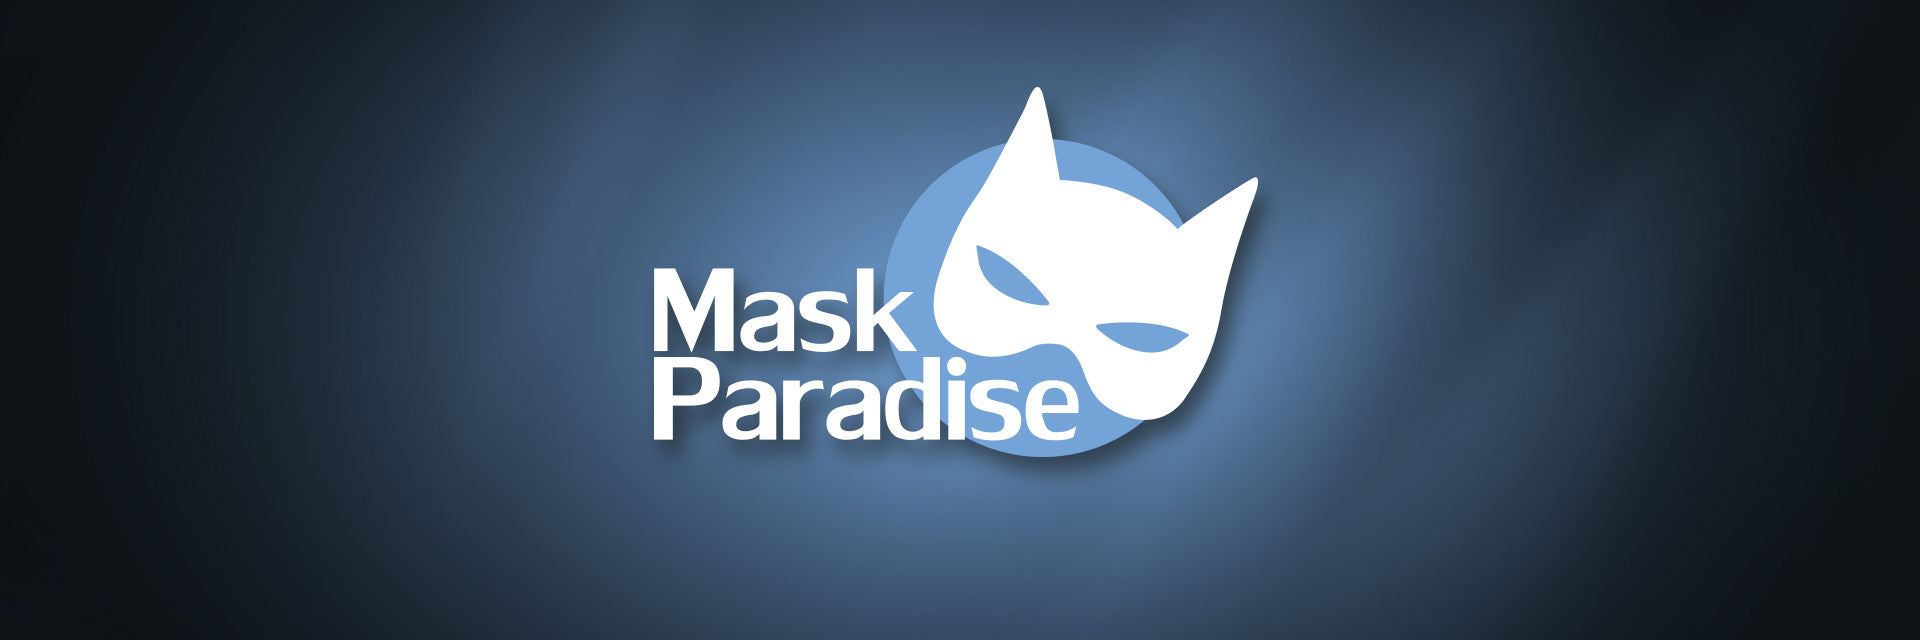 MASK PARADISE Logo